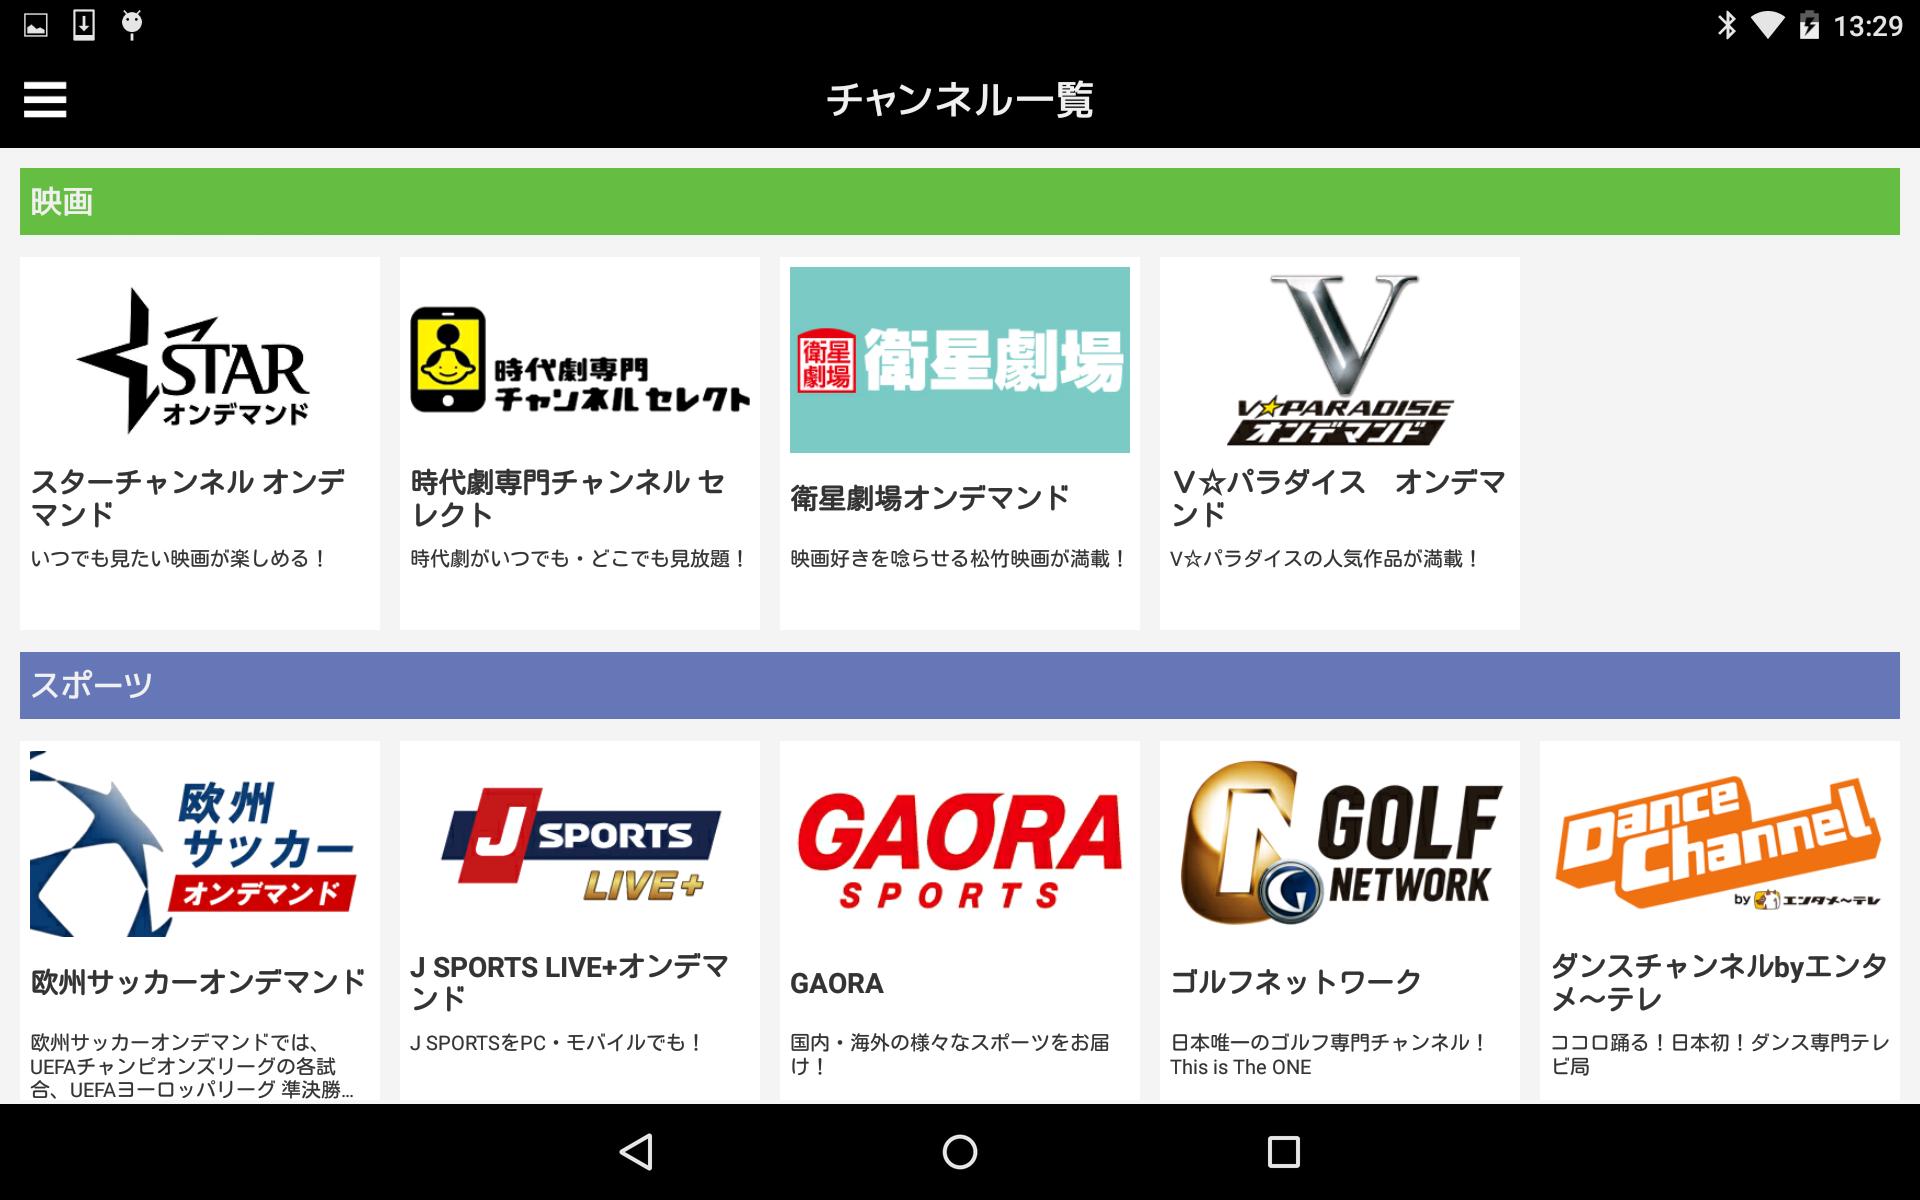 スカパー オンデマンド For Android Apk Download